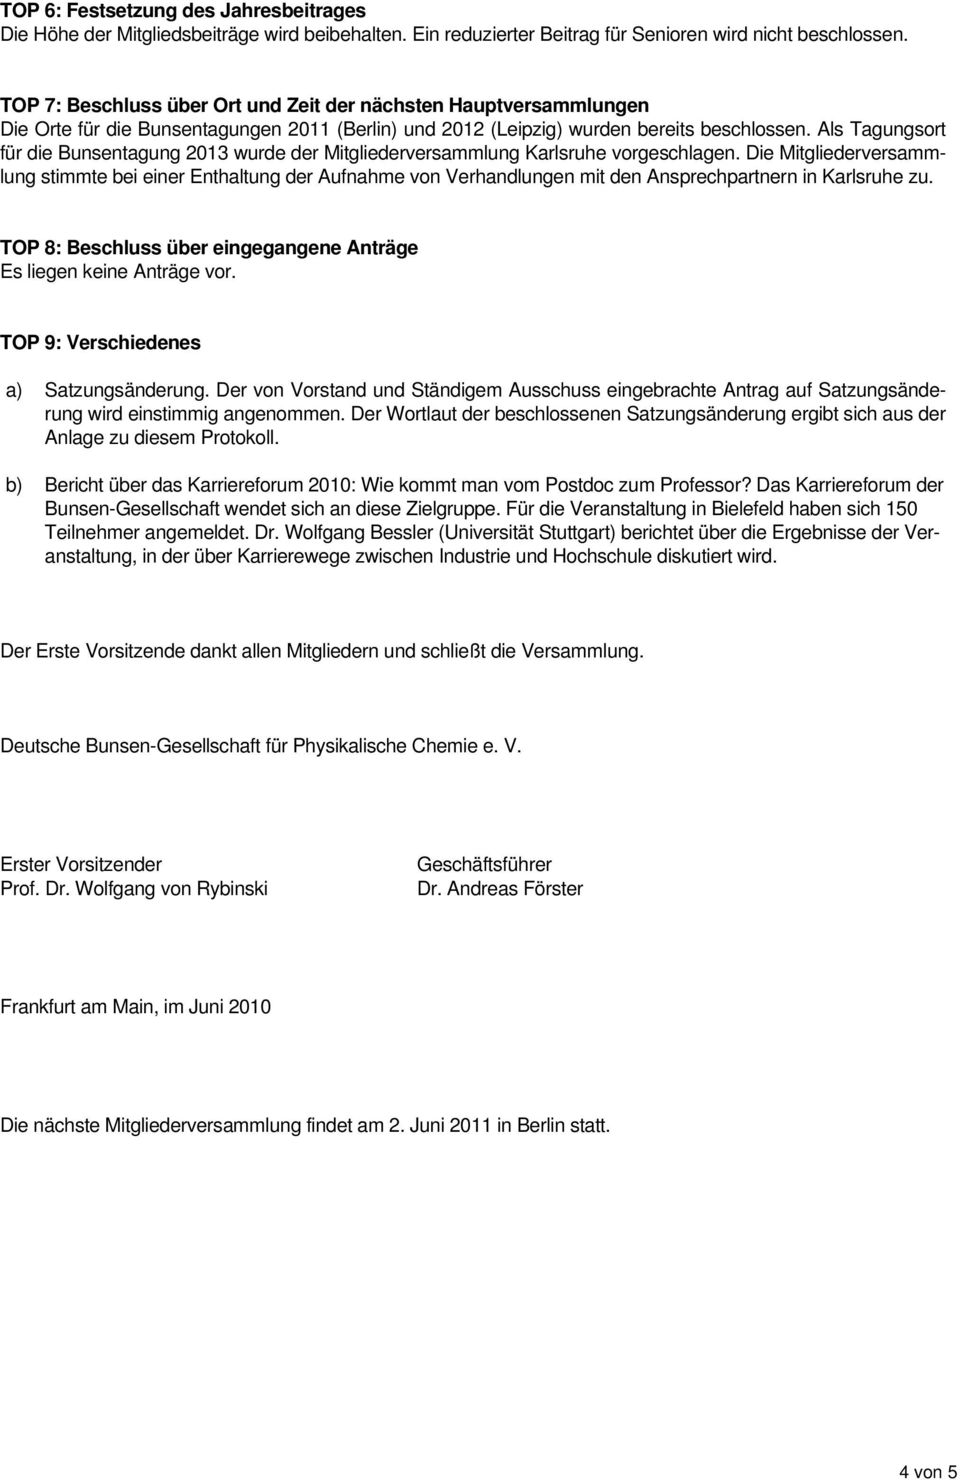 Als Tagungsort für die Bunsentagung 2013 wurde der Mitgliederversammlung Karlsruhe vorgeschlagen.